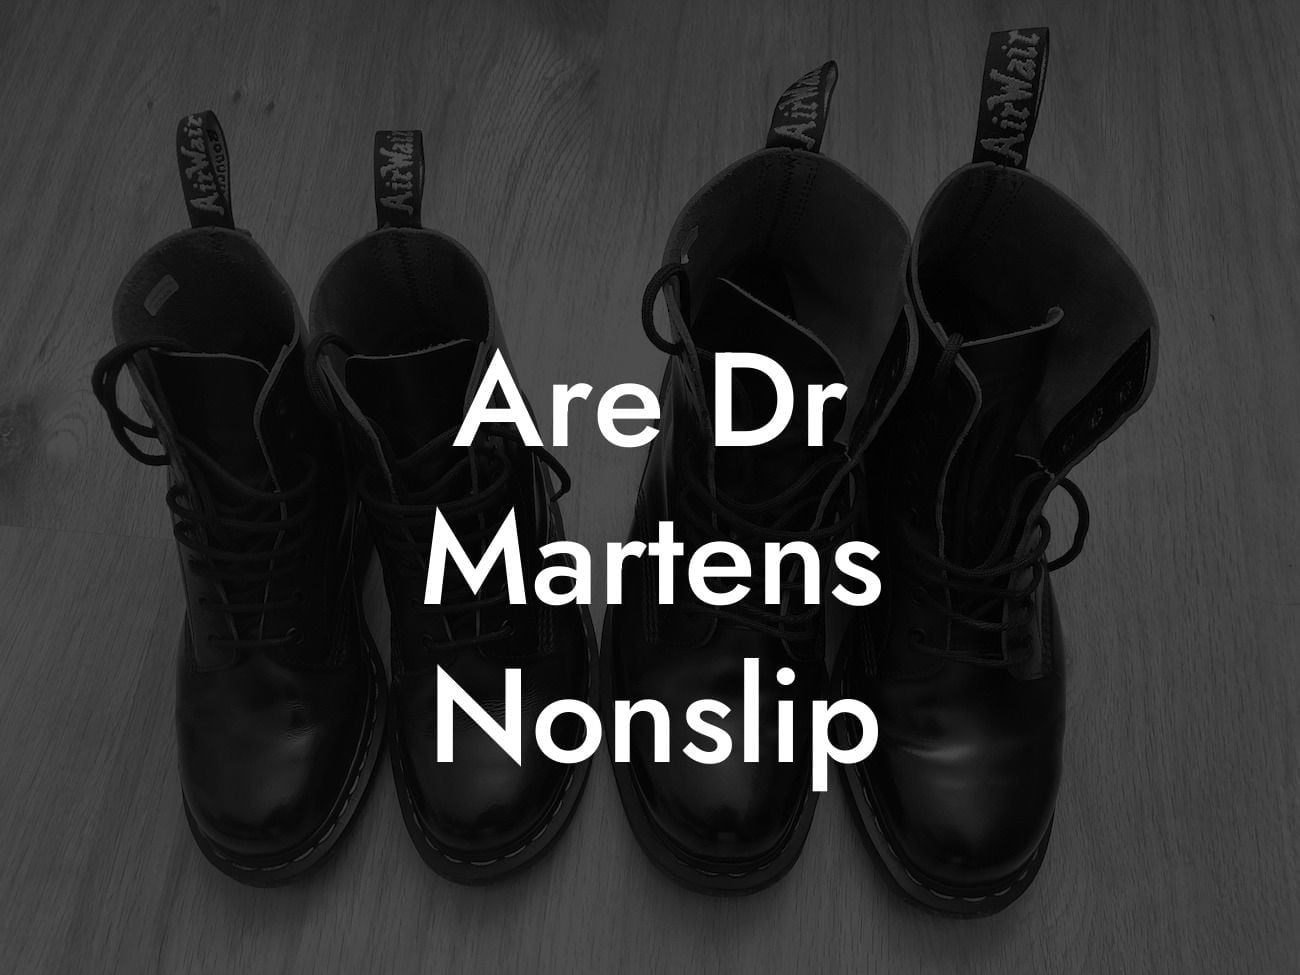 Are Dr Martens Nonslip